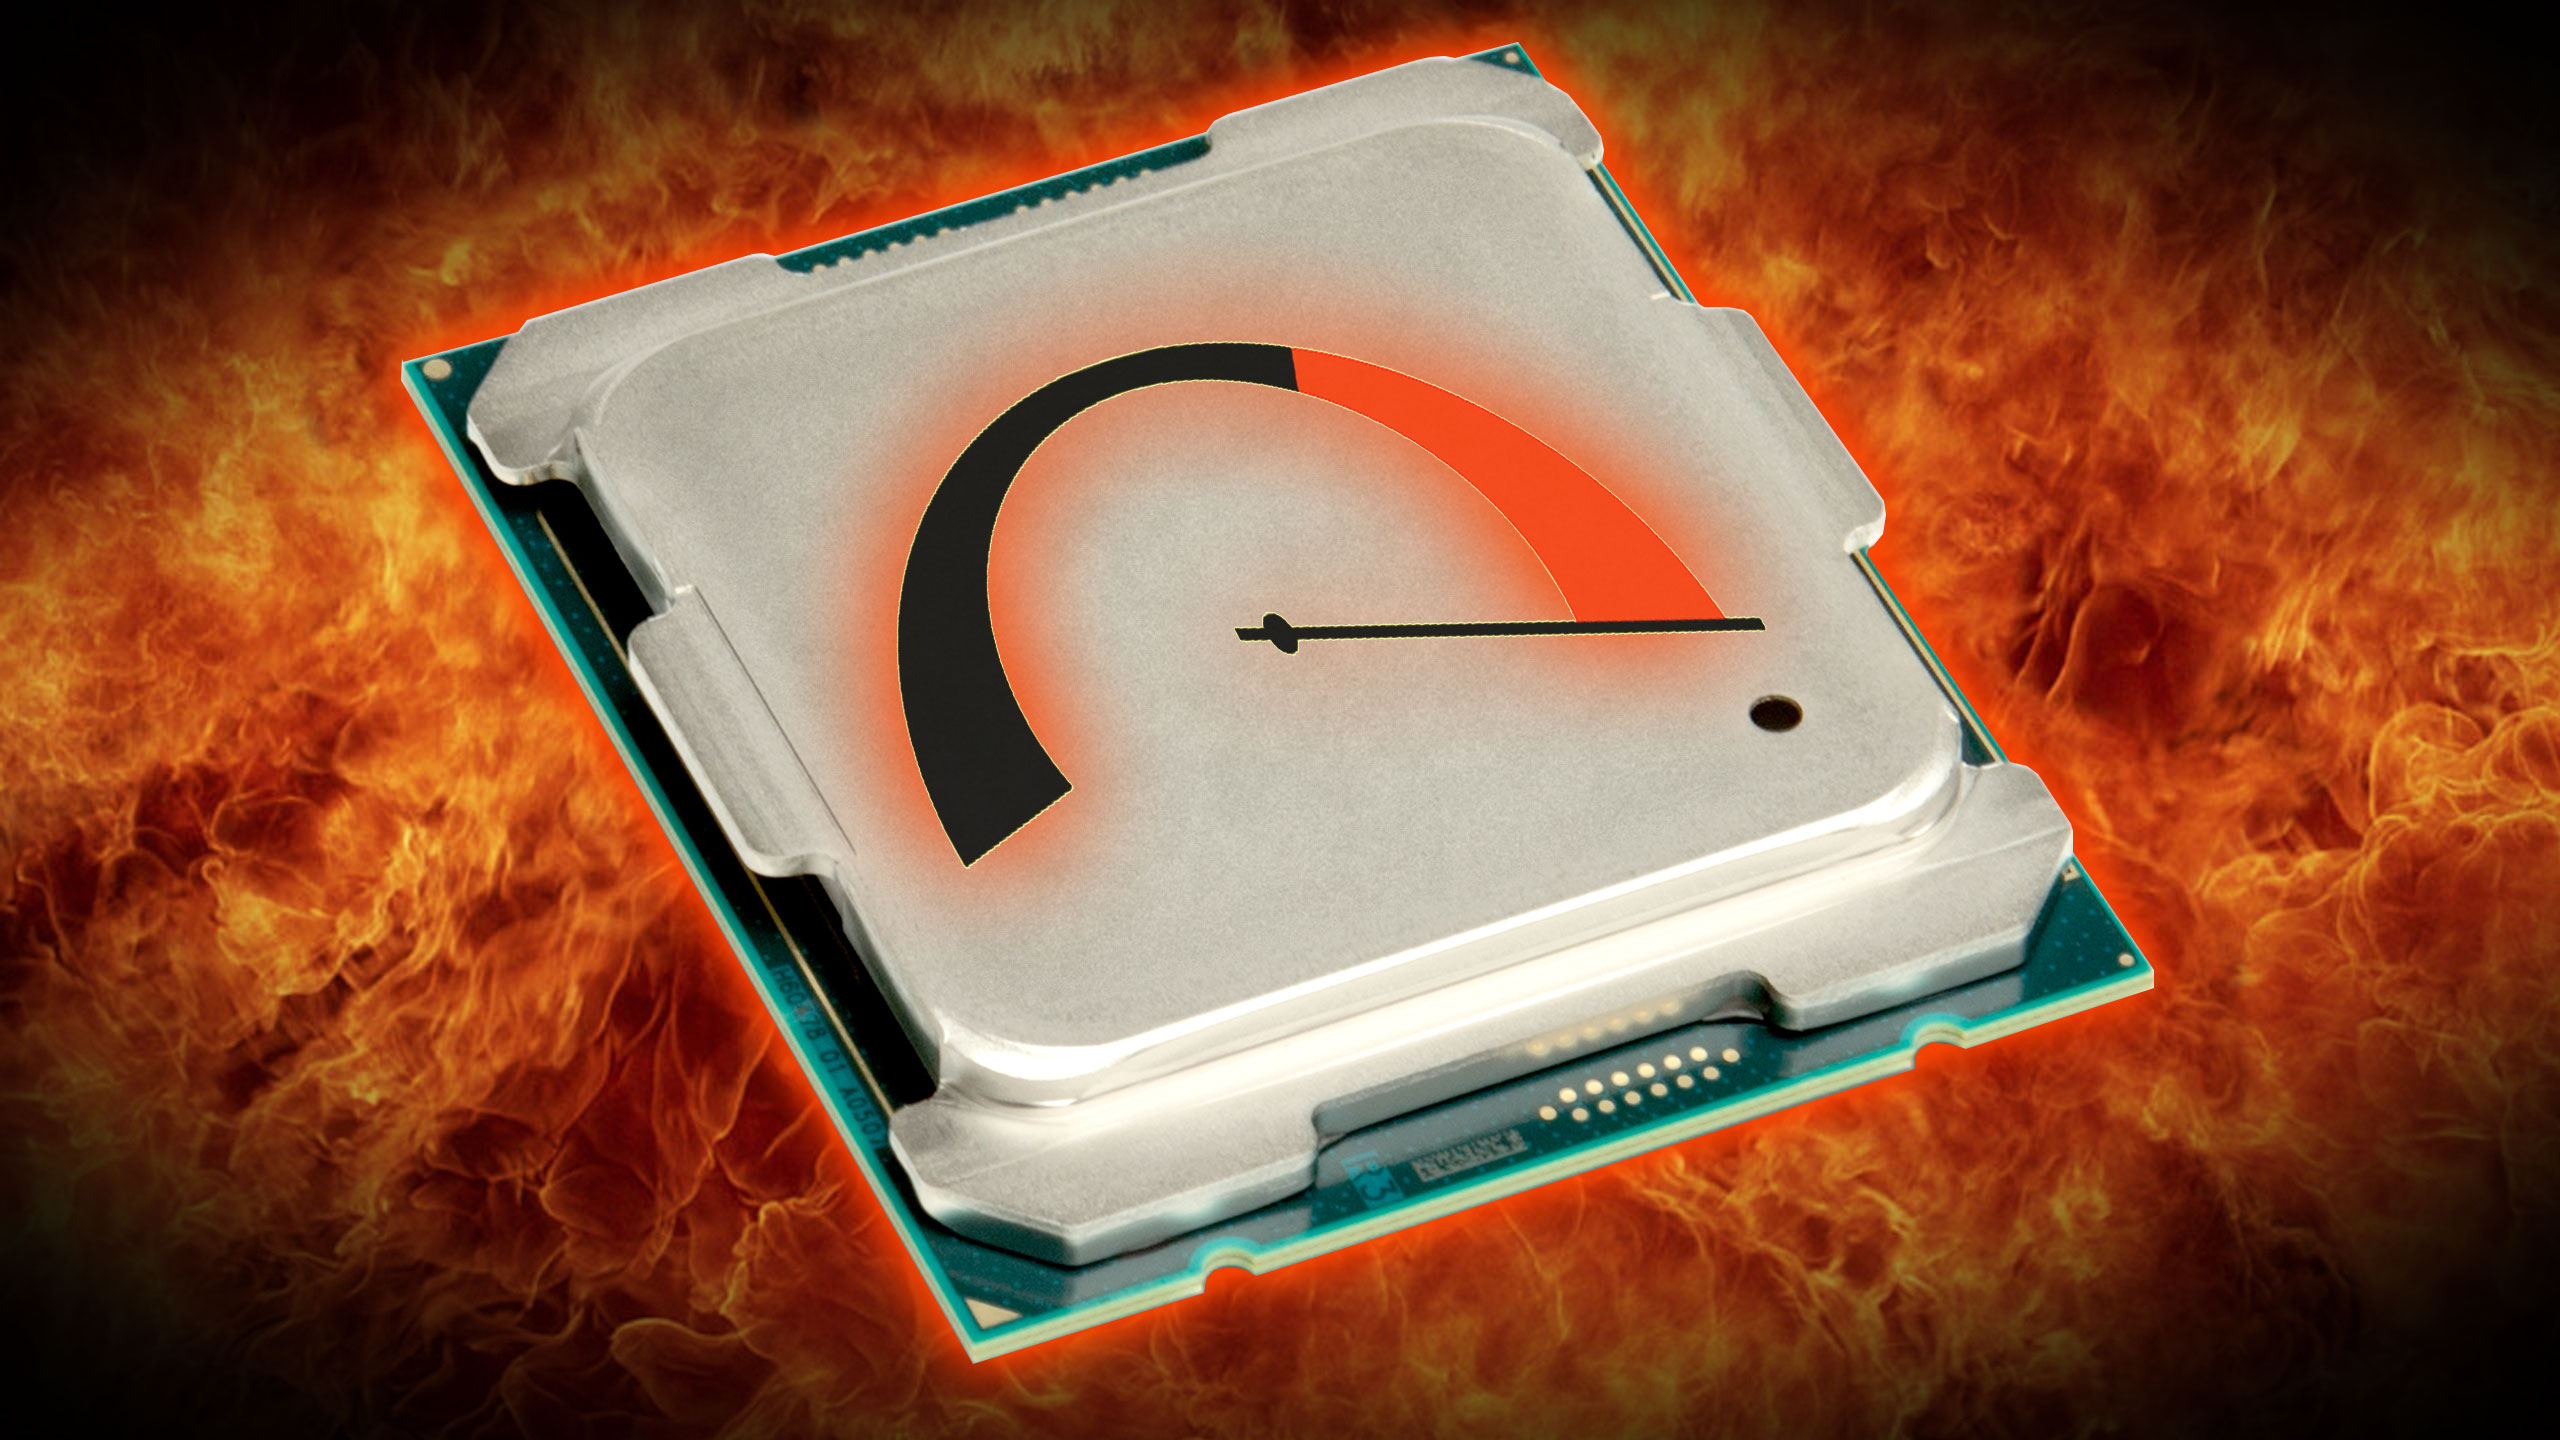 Normal CPU Temperature